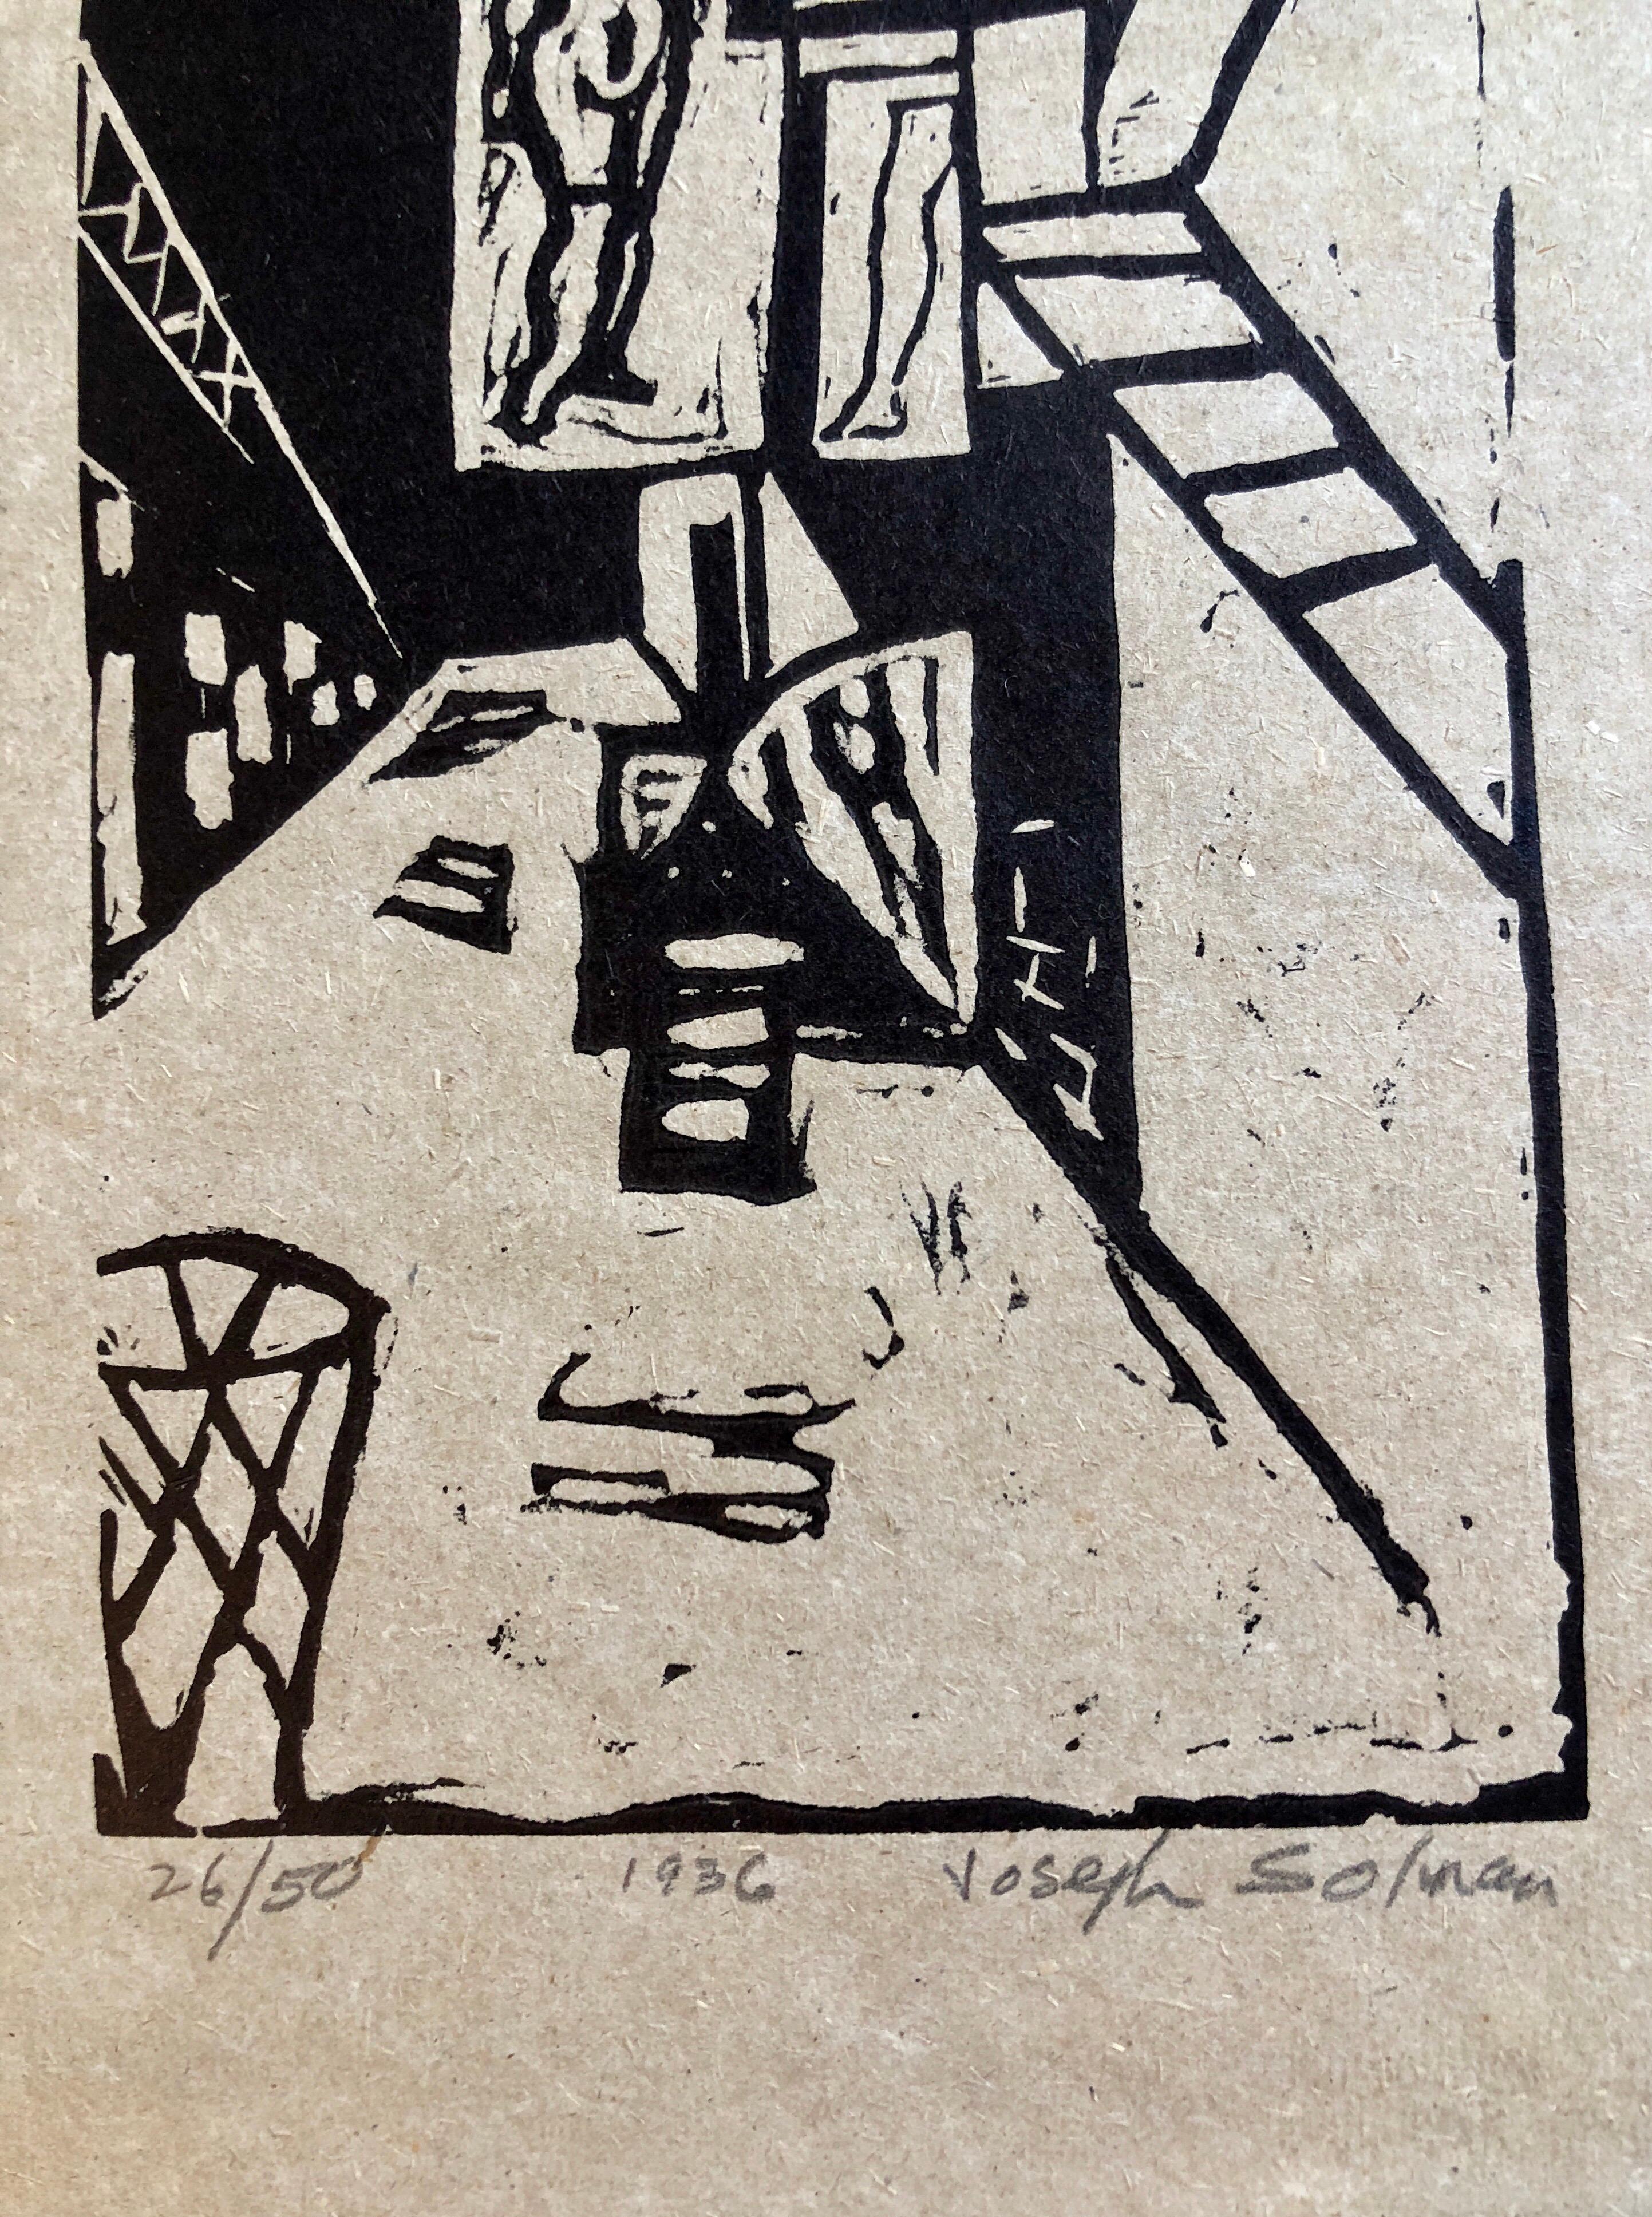 Une superbe scène de rue de la ville de New York dans un style réaliste moderniste, réalisée à l'époque de la grande dépression.
Le tapis est 17.5x14, la feuille mesure 13x10 l'image est 10x4.75


Joseph Solman (25 janvier 1909 - 16 avril 2008)